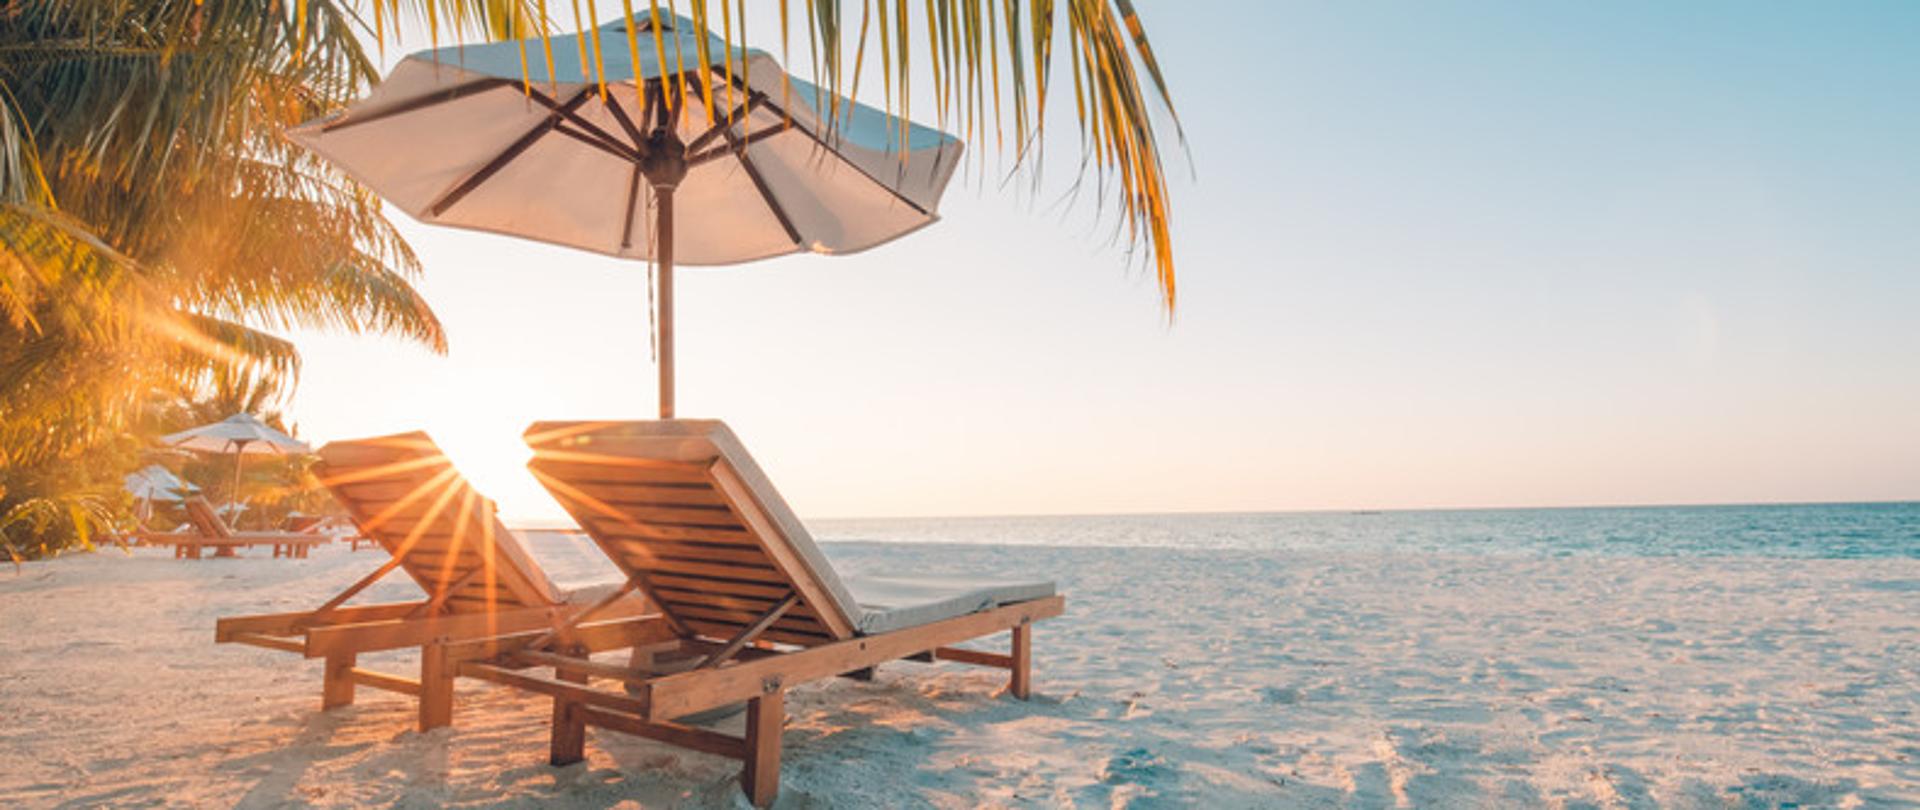 Na zdjęciu widoczna jest plaża. Na piasku pod palmą znajdują się dwa leżaki obok, których stoi parasol.